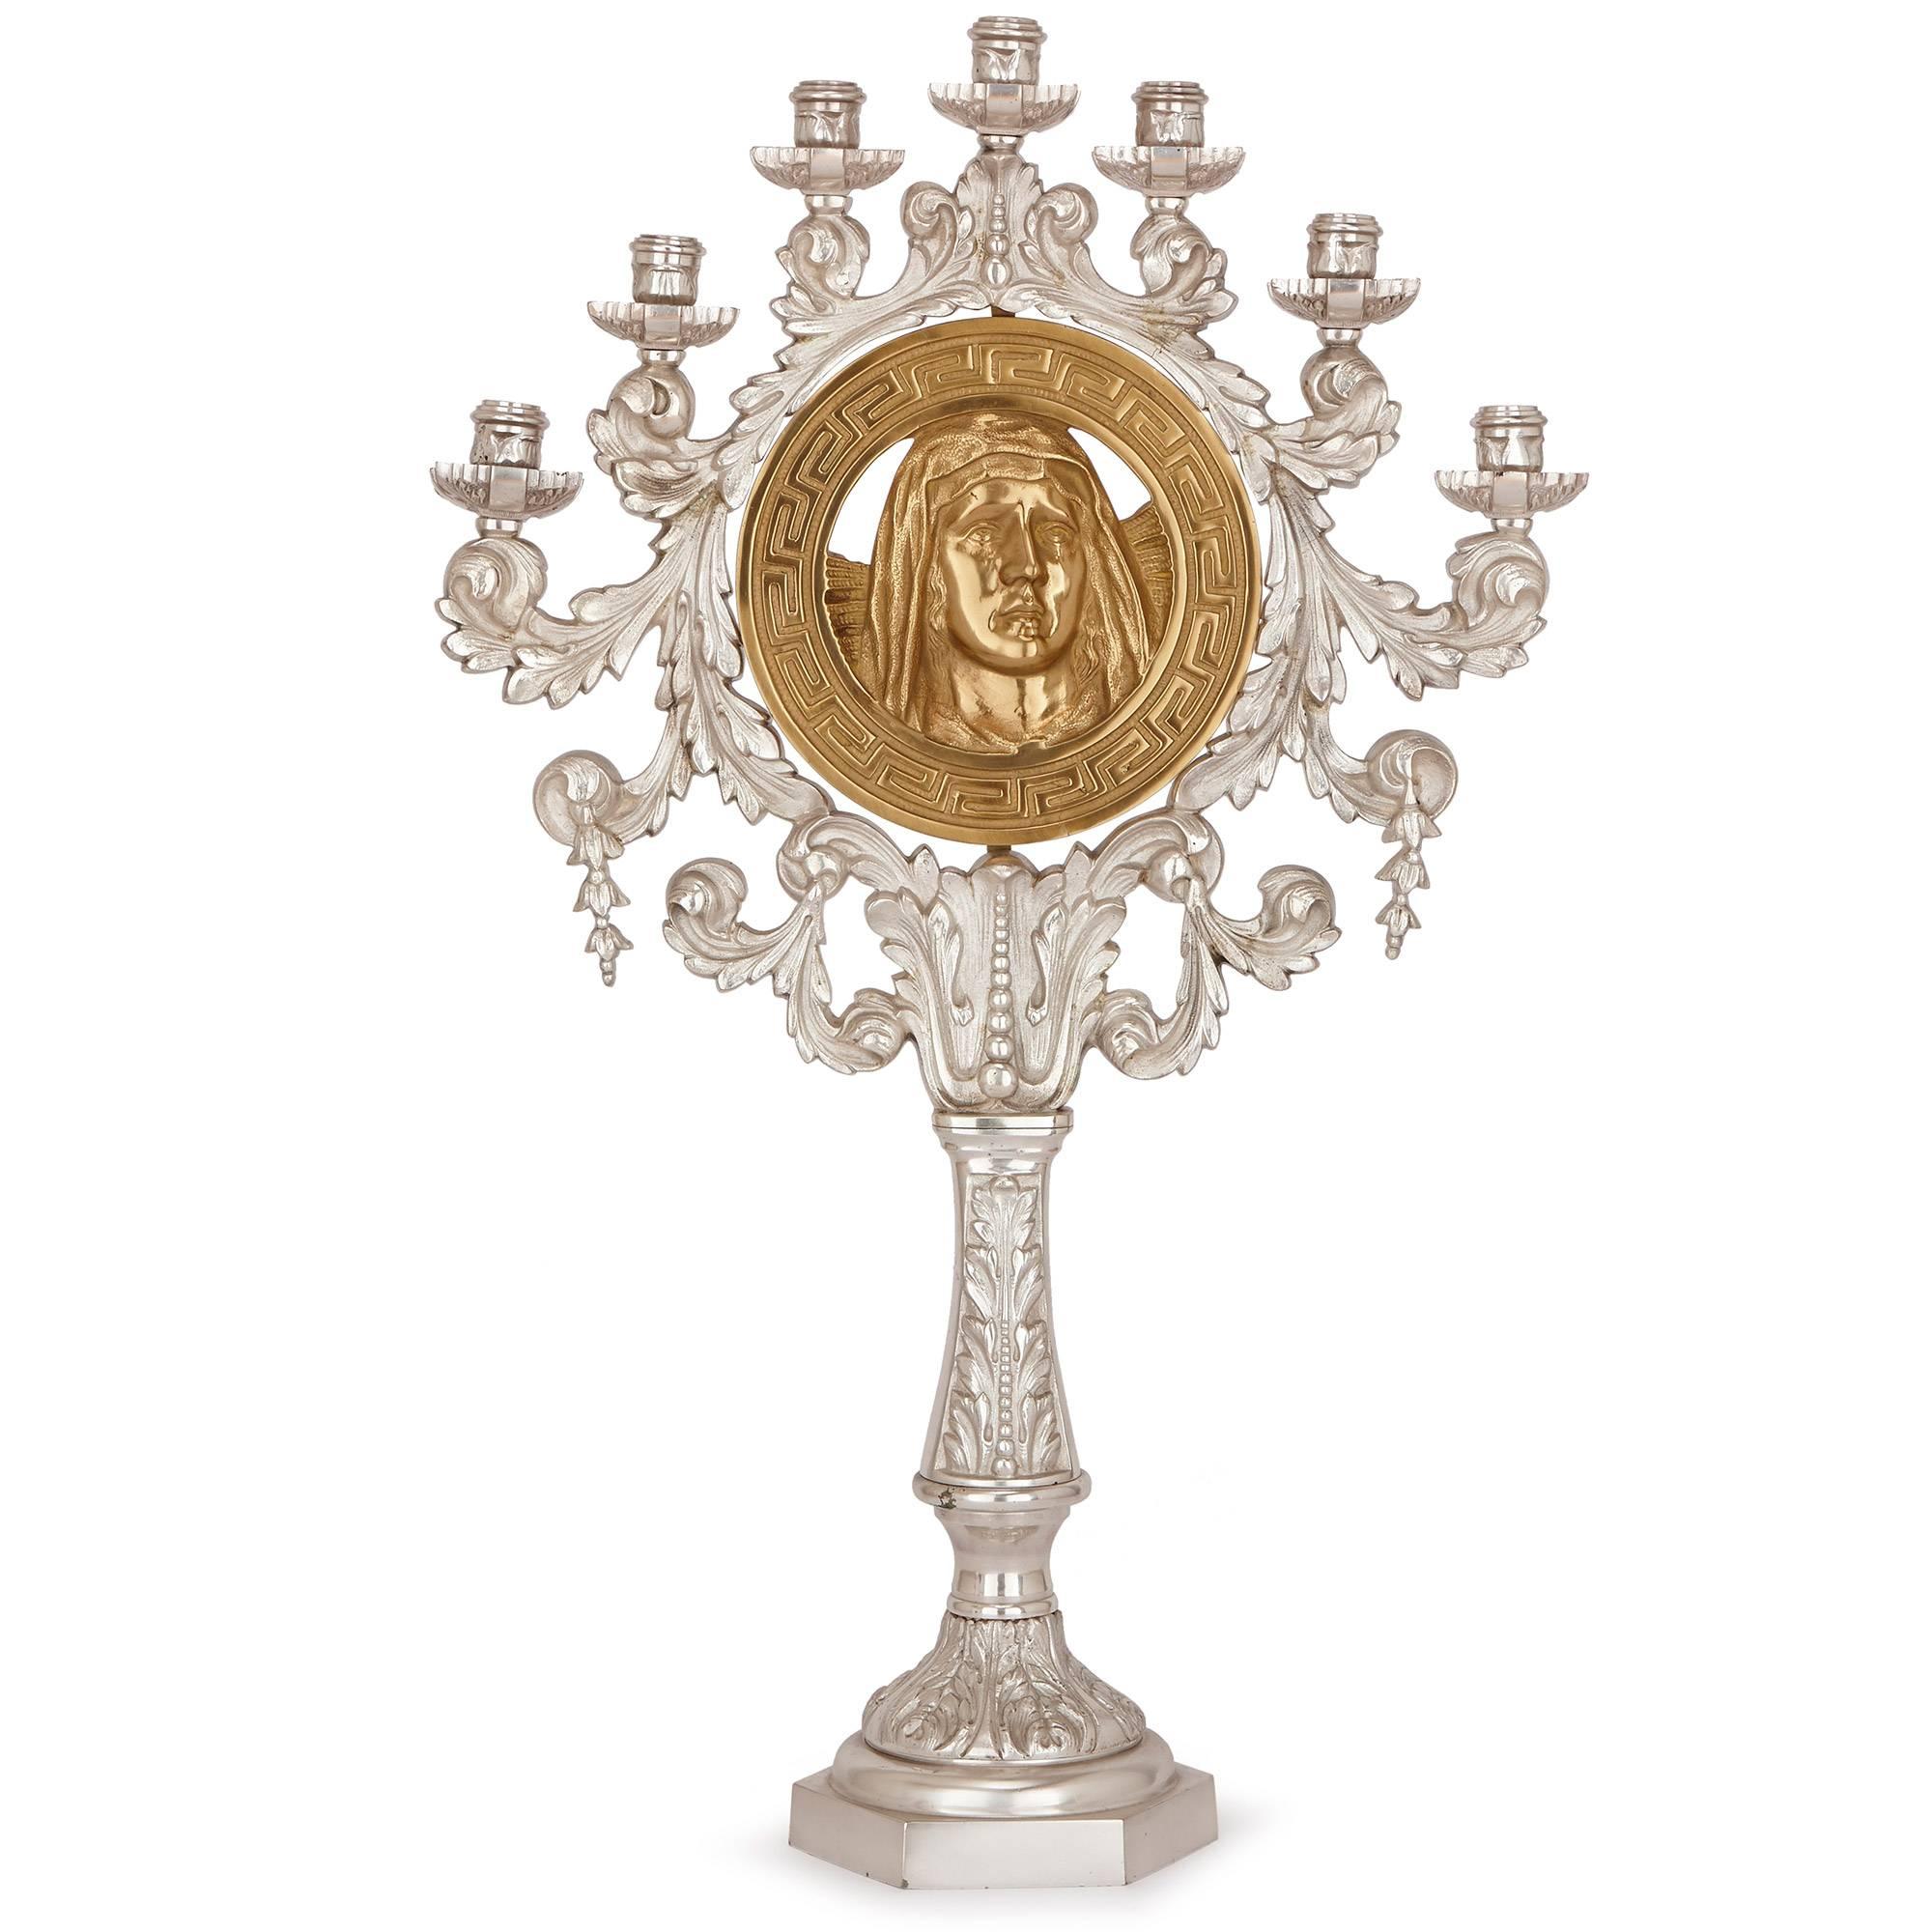 Ces candélabres étonnants et inhabituels représentent chacun un portrait de Jésus et de la Madone en bronze doré au centre. Chaque portrait est bordé d'un motif circulaire géométrique doré, lui-même entouré d'une couronne circulaire de feuilles